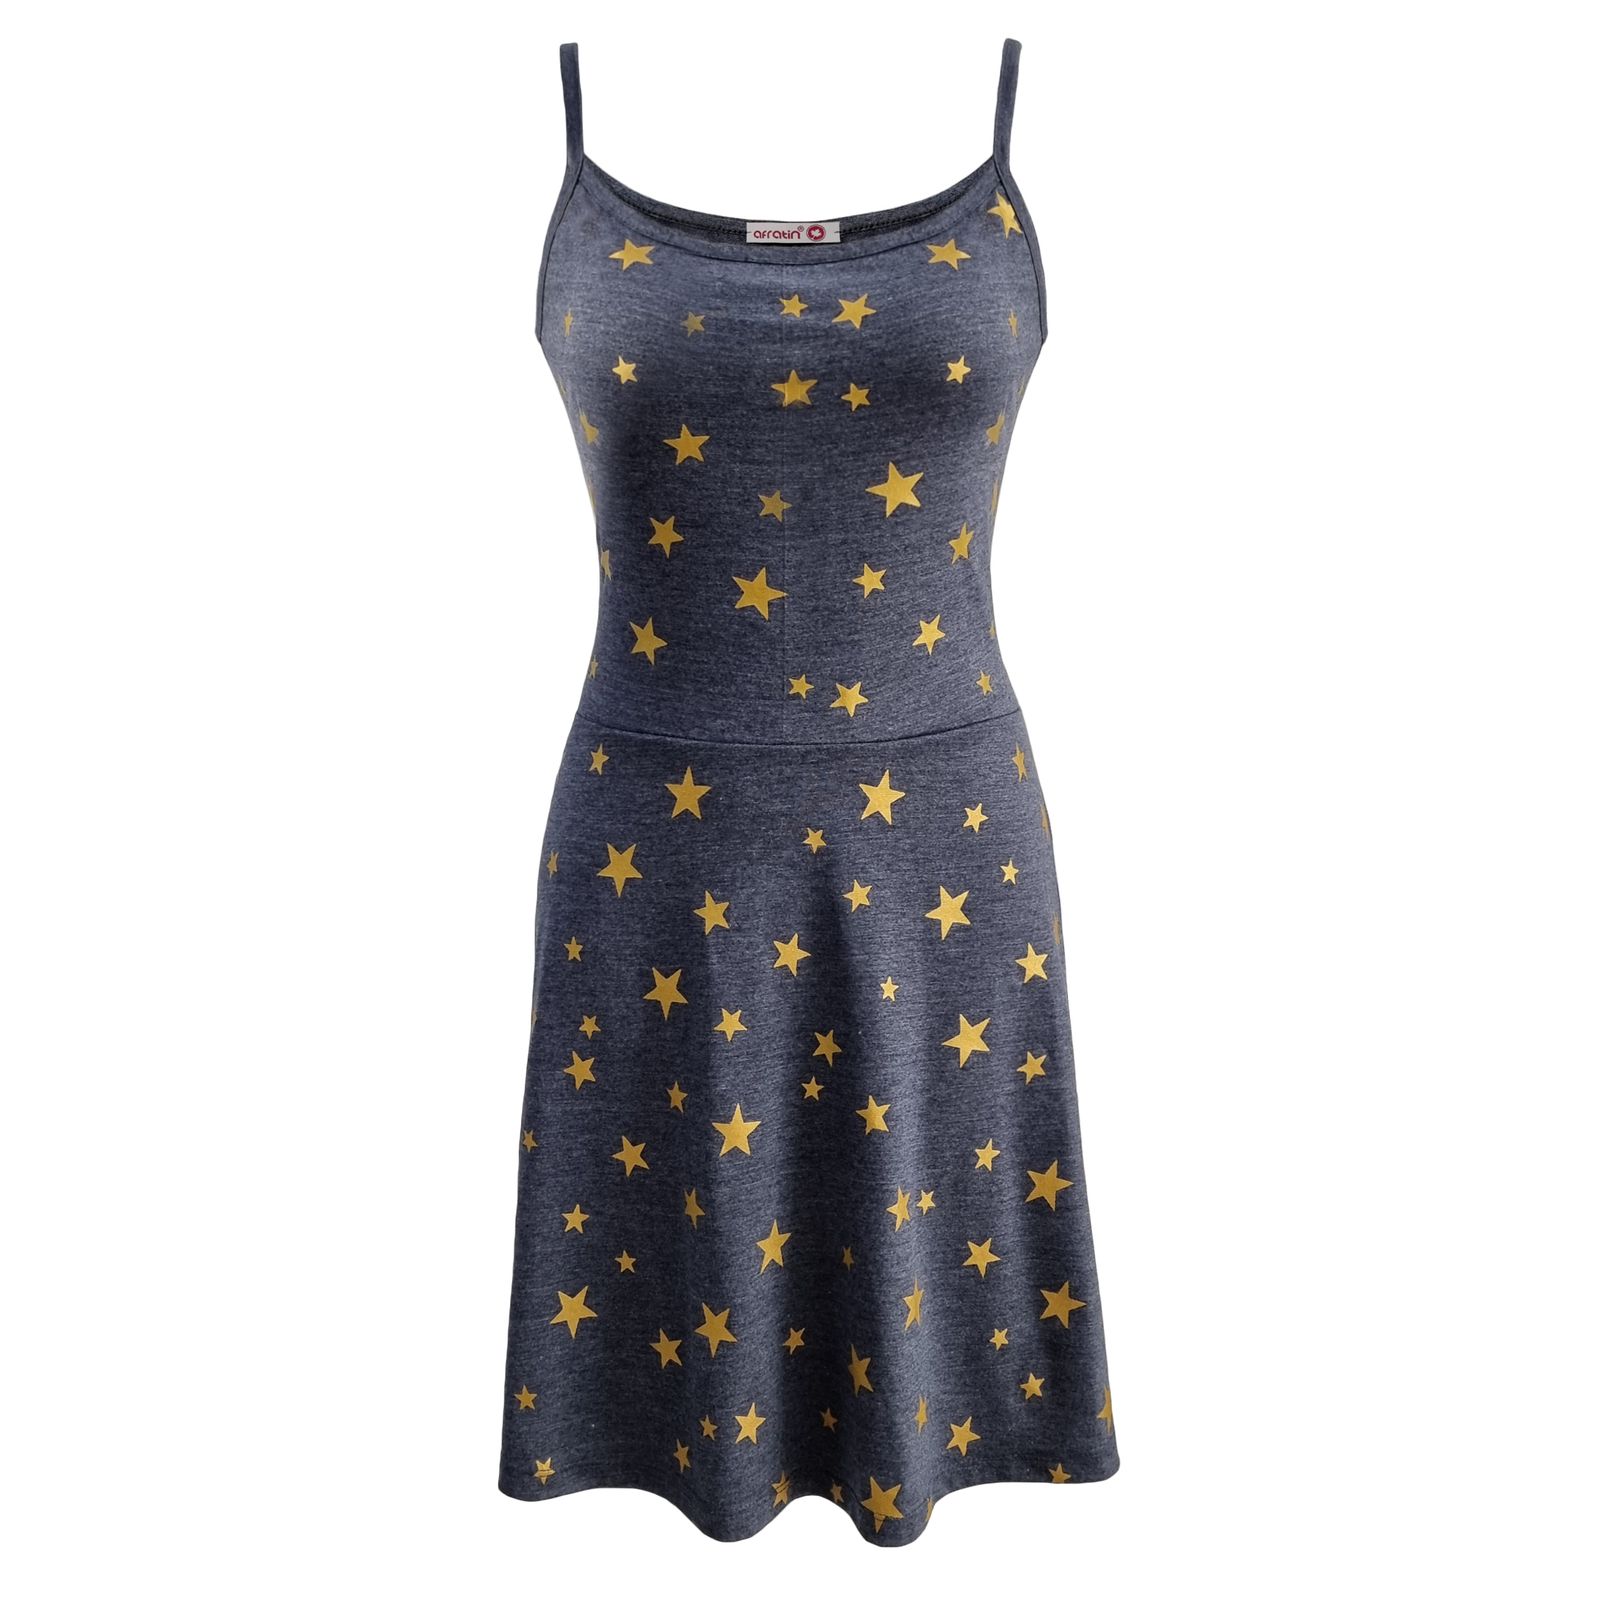 پیراهن زنانه افراتین مدل ستاره کد 9531 رنگ طوسی -  - 2